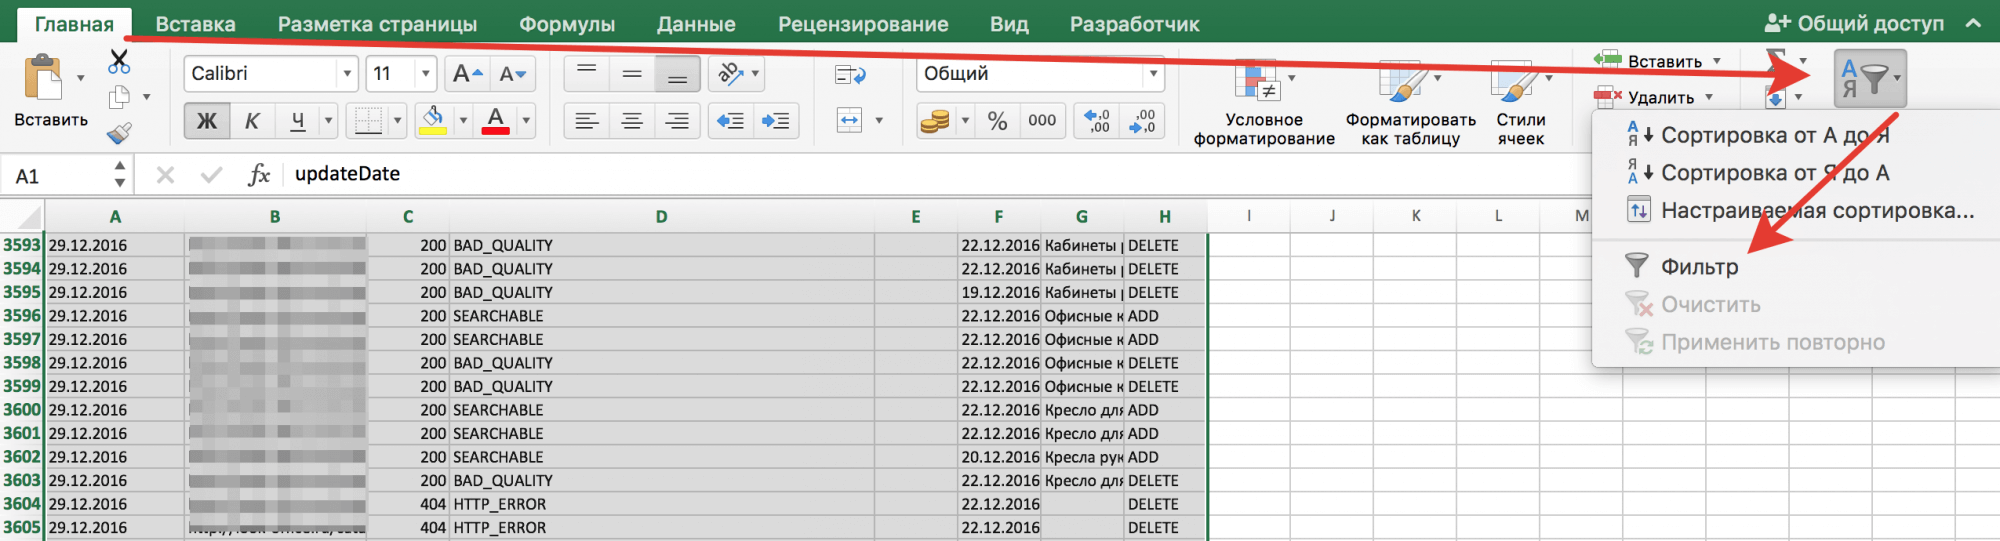 Включение фильтров в Excel по страницам в поиске